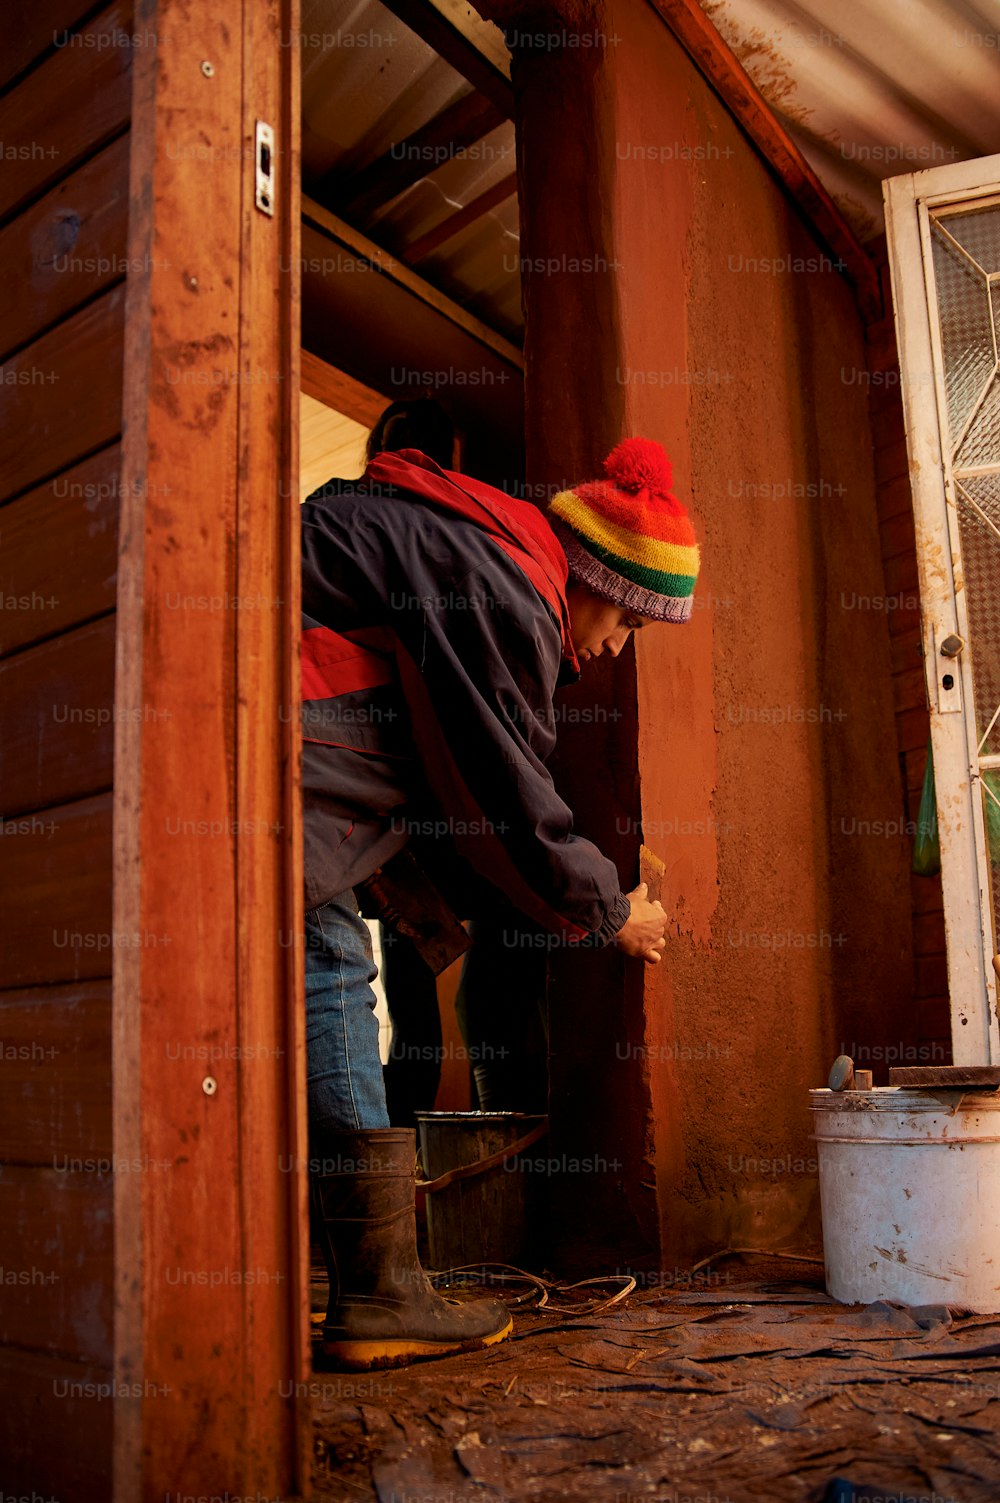 빨강, 노랑, 초록색 모자를 쓴 남자가 창문에서 일하고 있다